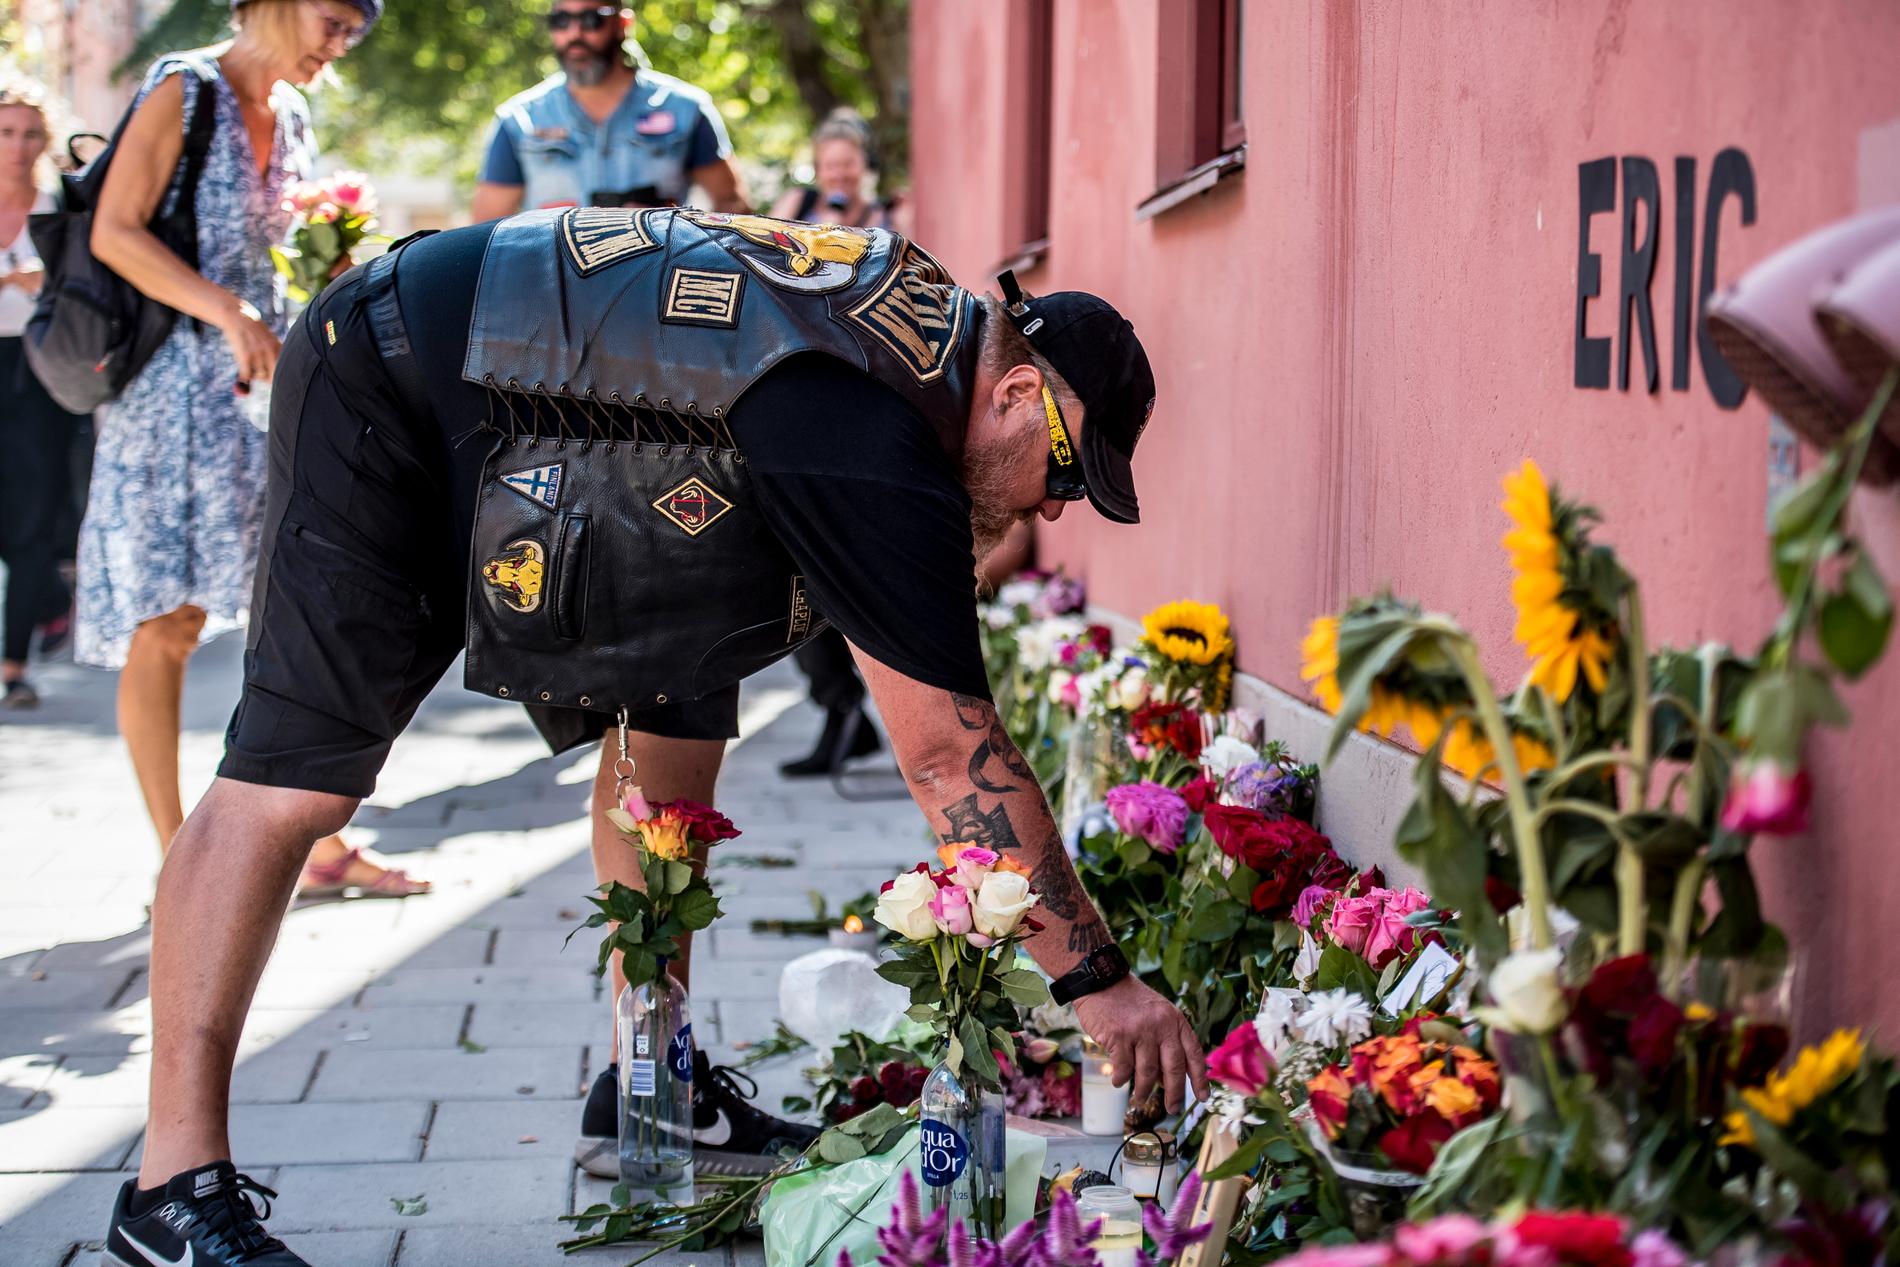 20-årige Eric Torell, med Downs syndrom, sköts ihjäl av polisen i Stockholm den 2 augusti 2018 när han viftade med en leksakspistol.